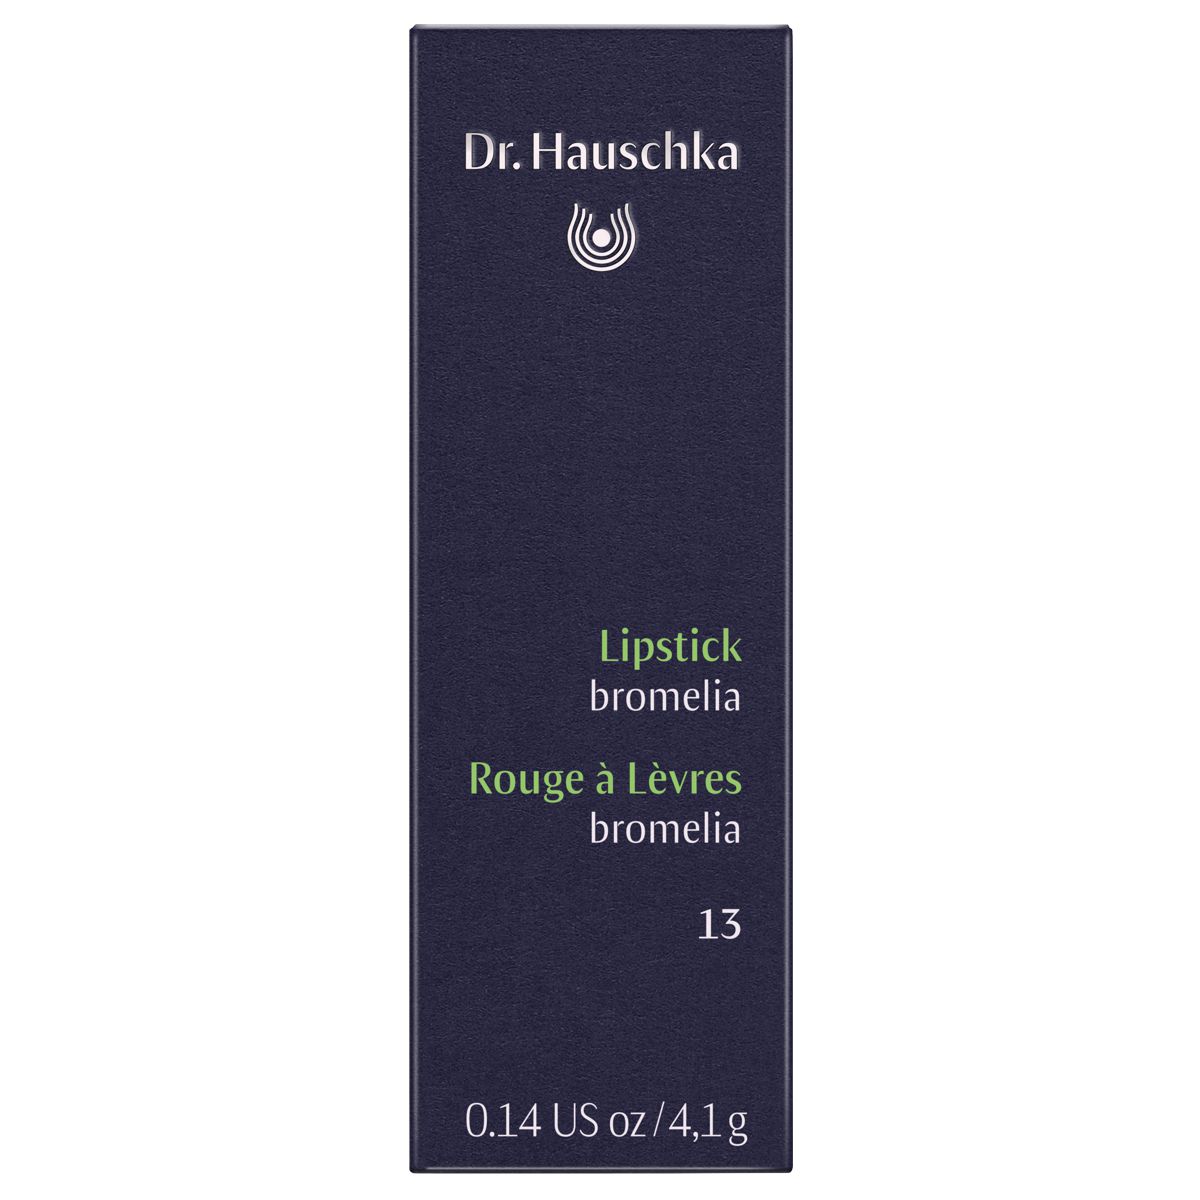 Dr_Hauschka_Lipstick_13_bromelia_online_kaufen